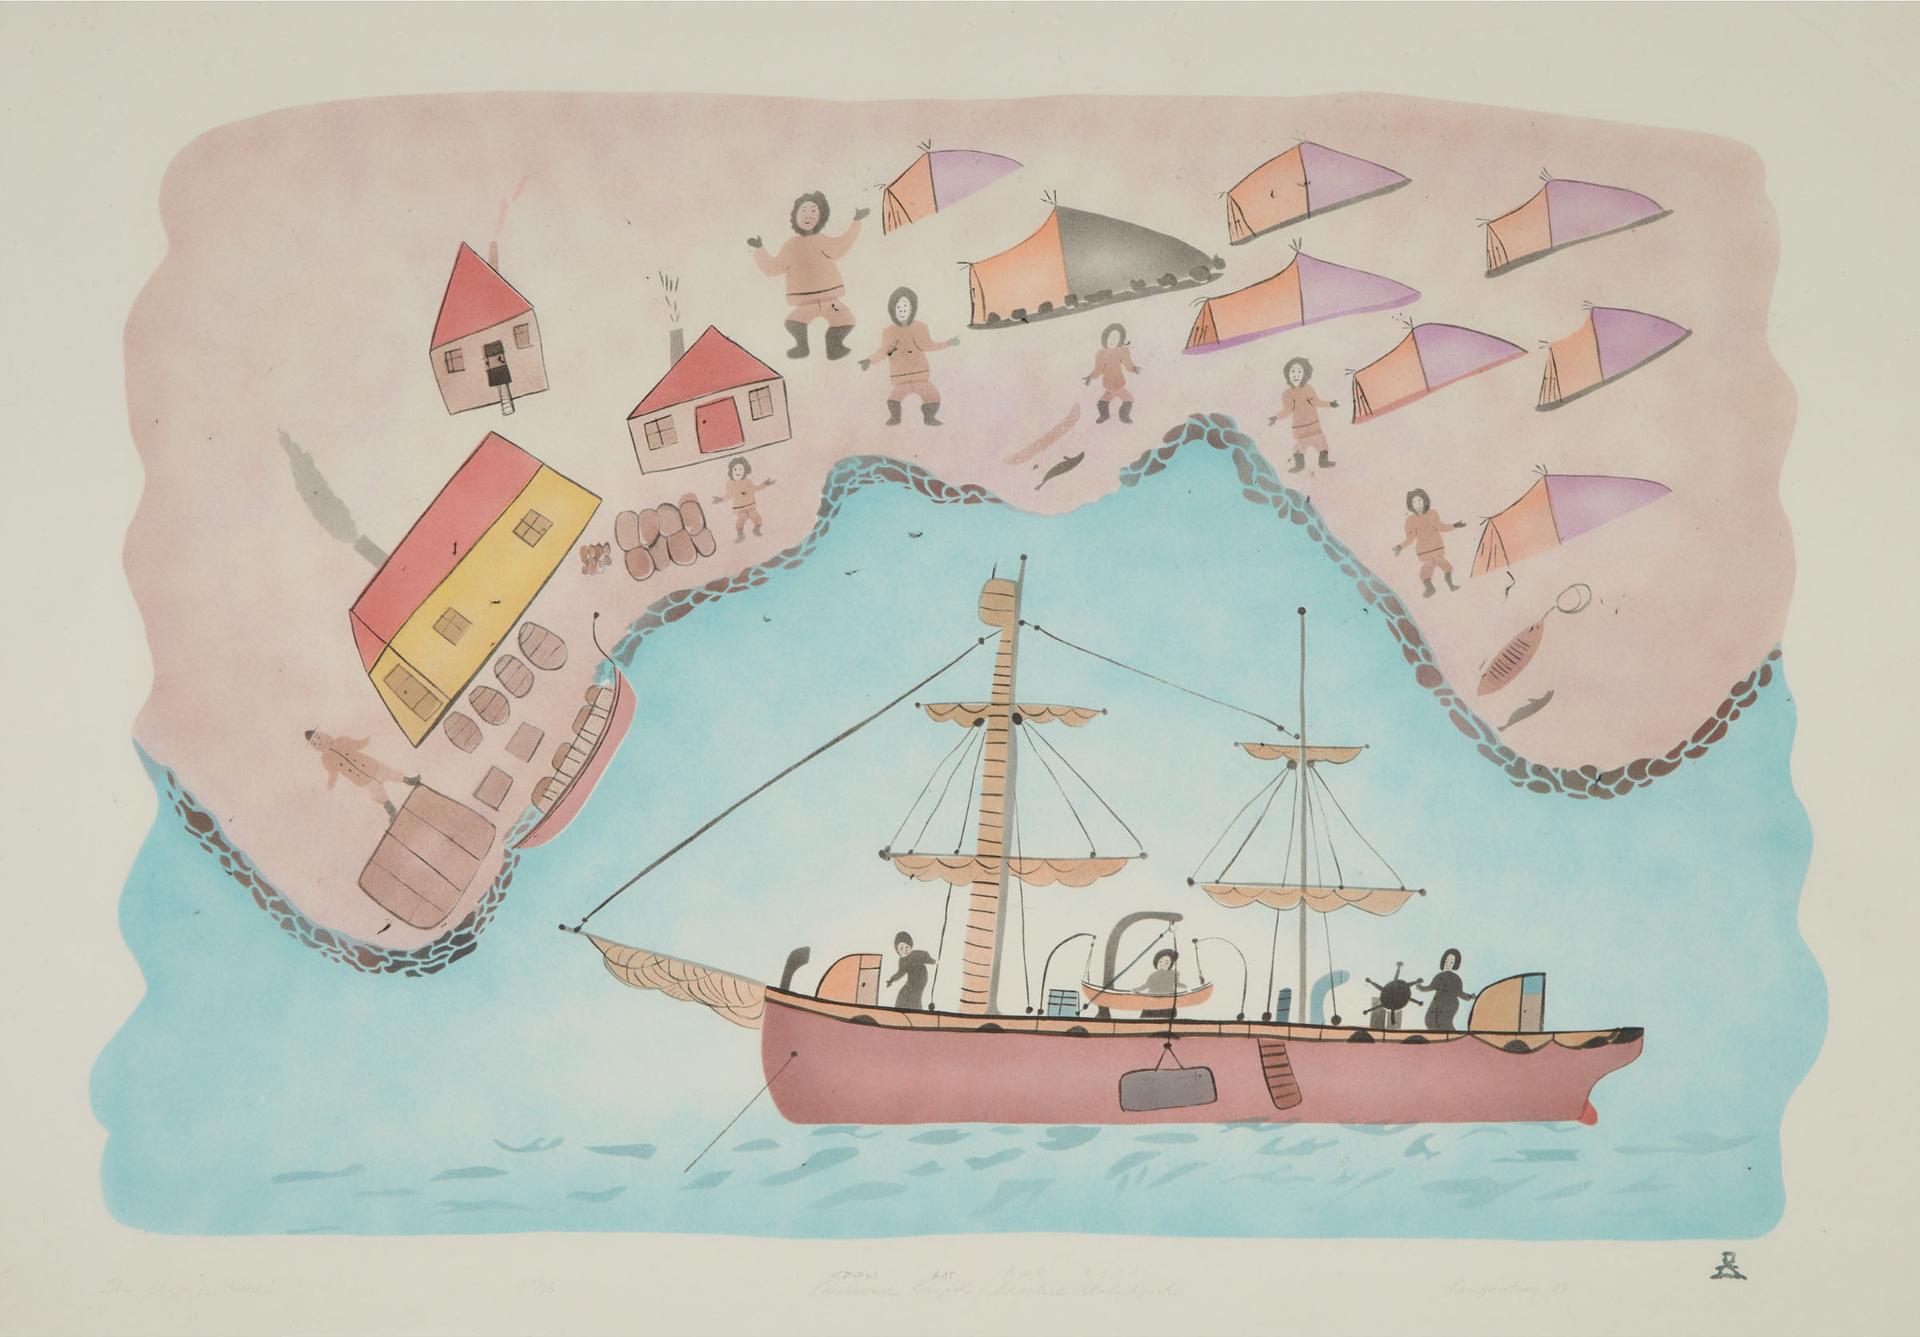 Pauloosie Karpik (1911-1988) - The Ship Is Here!, 1985